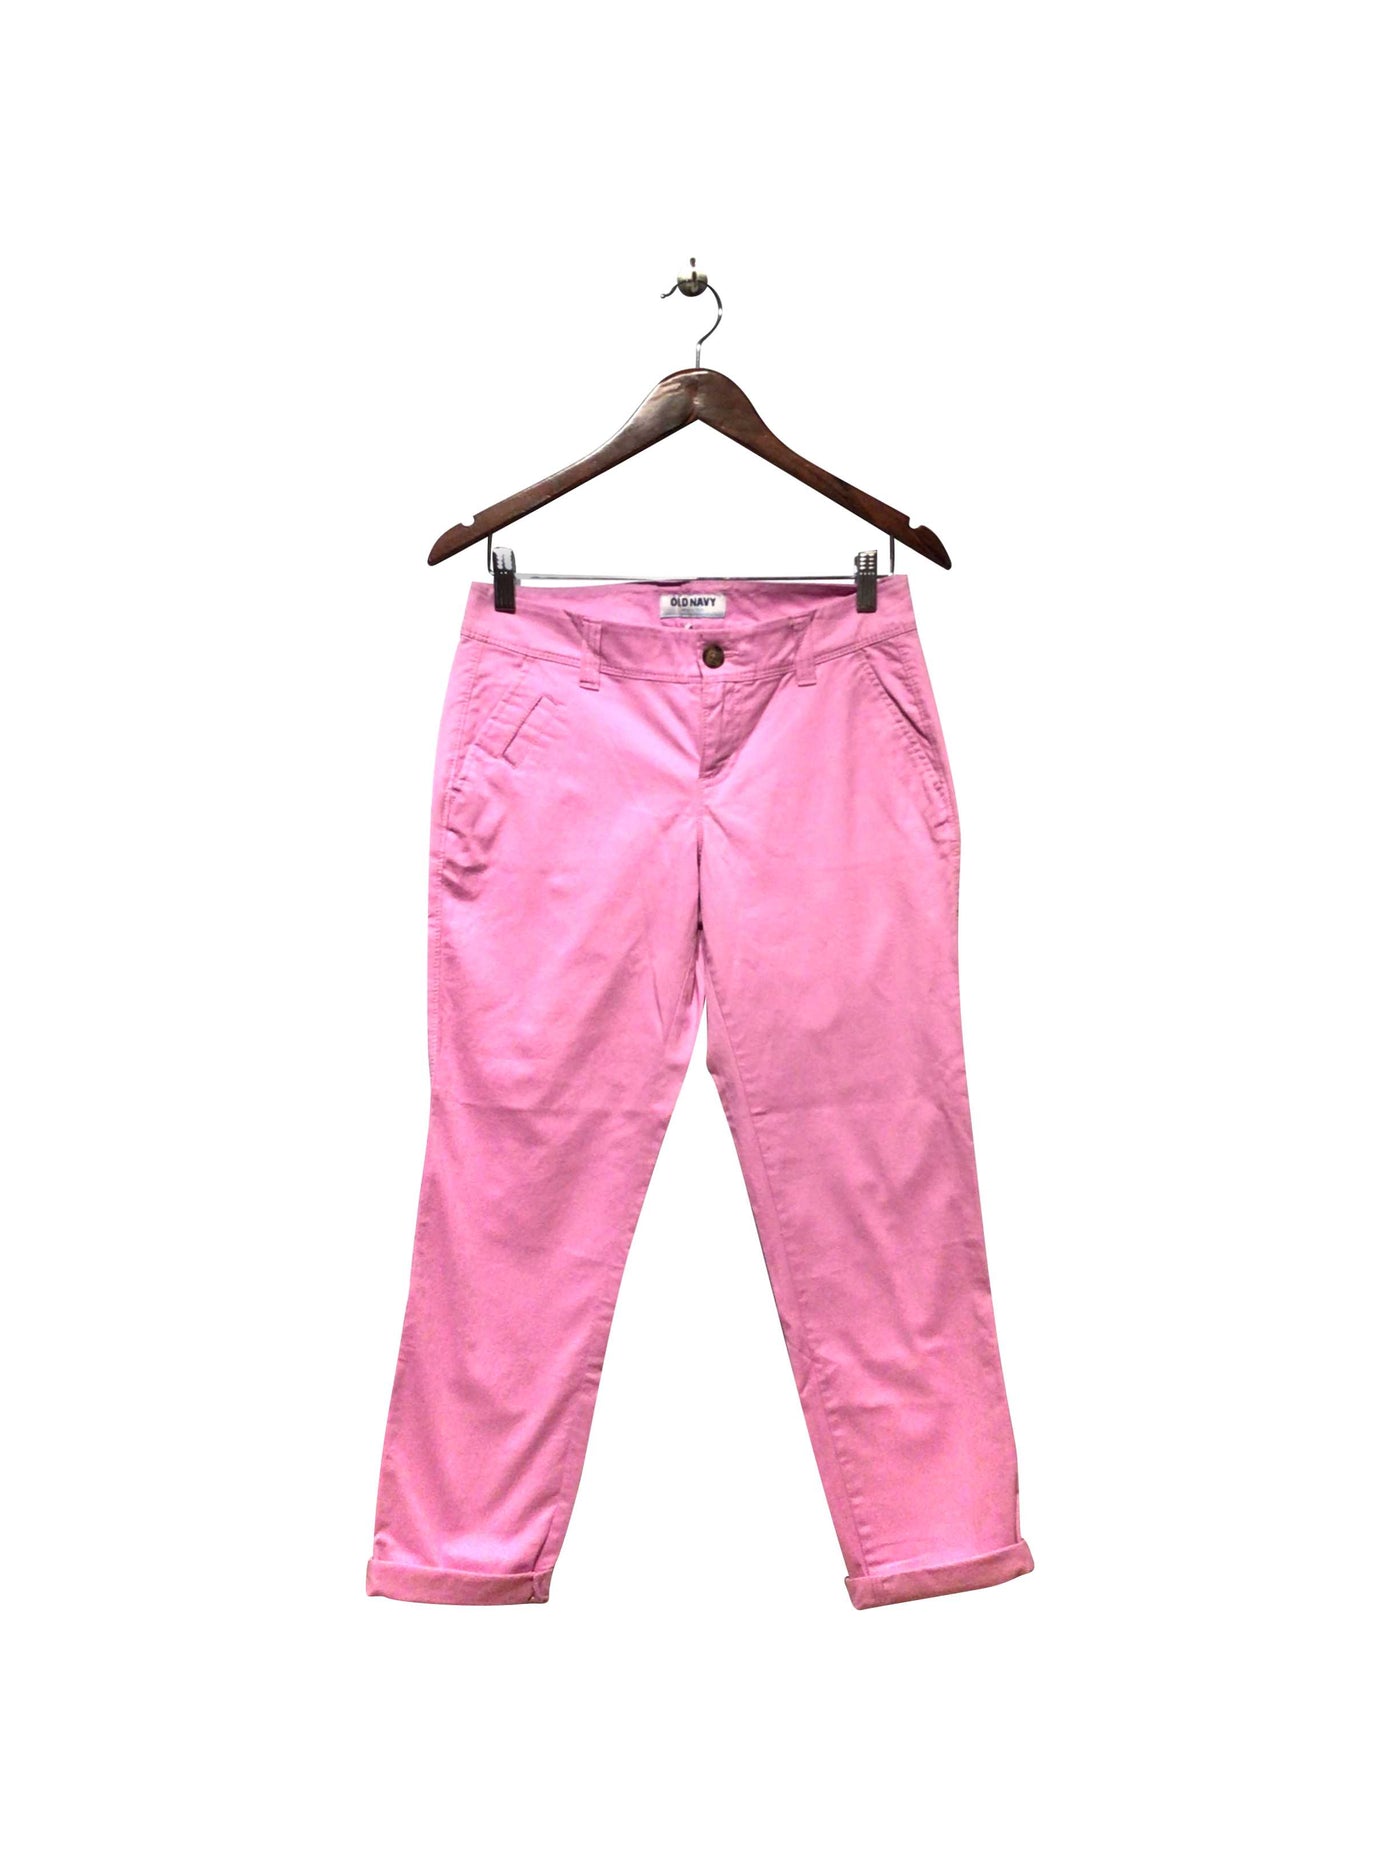 OLD NAVY Regular fit Pant in Pink  -  2  9.74 Koop